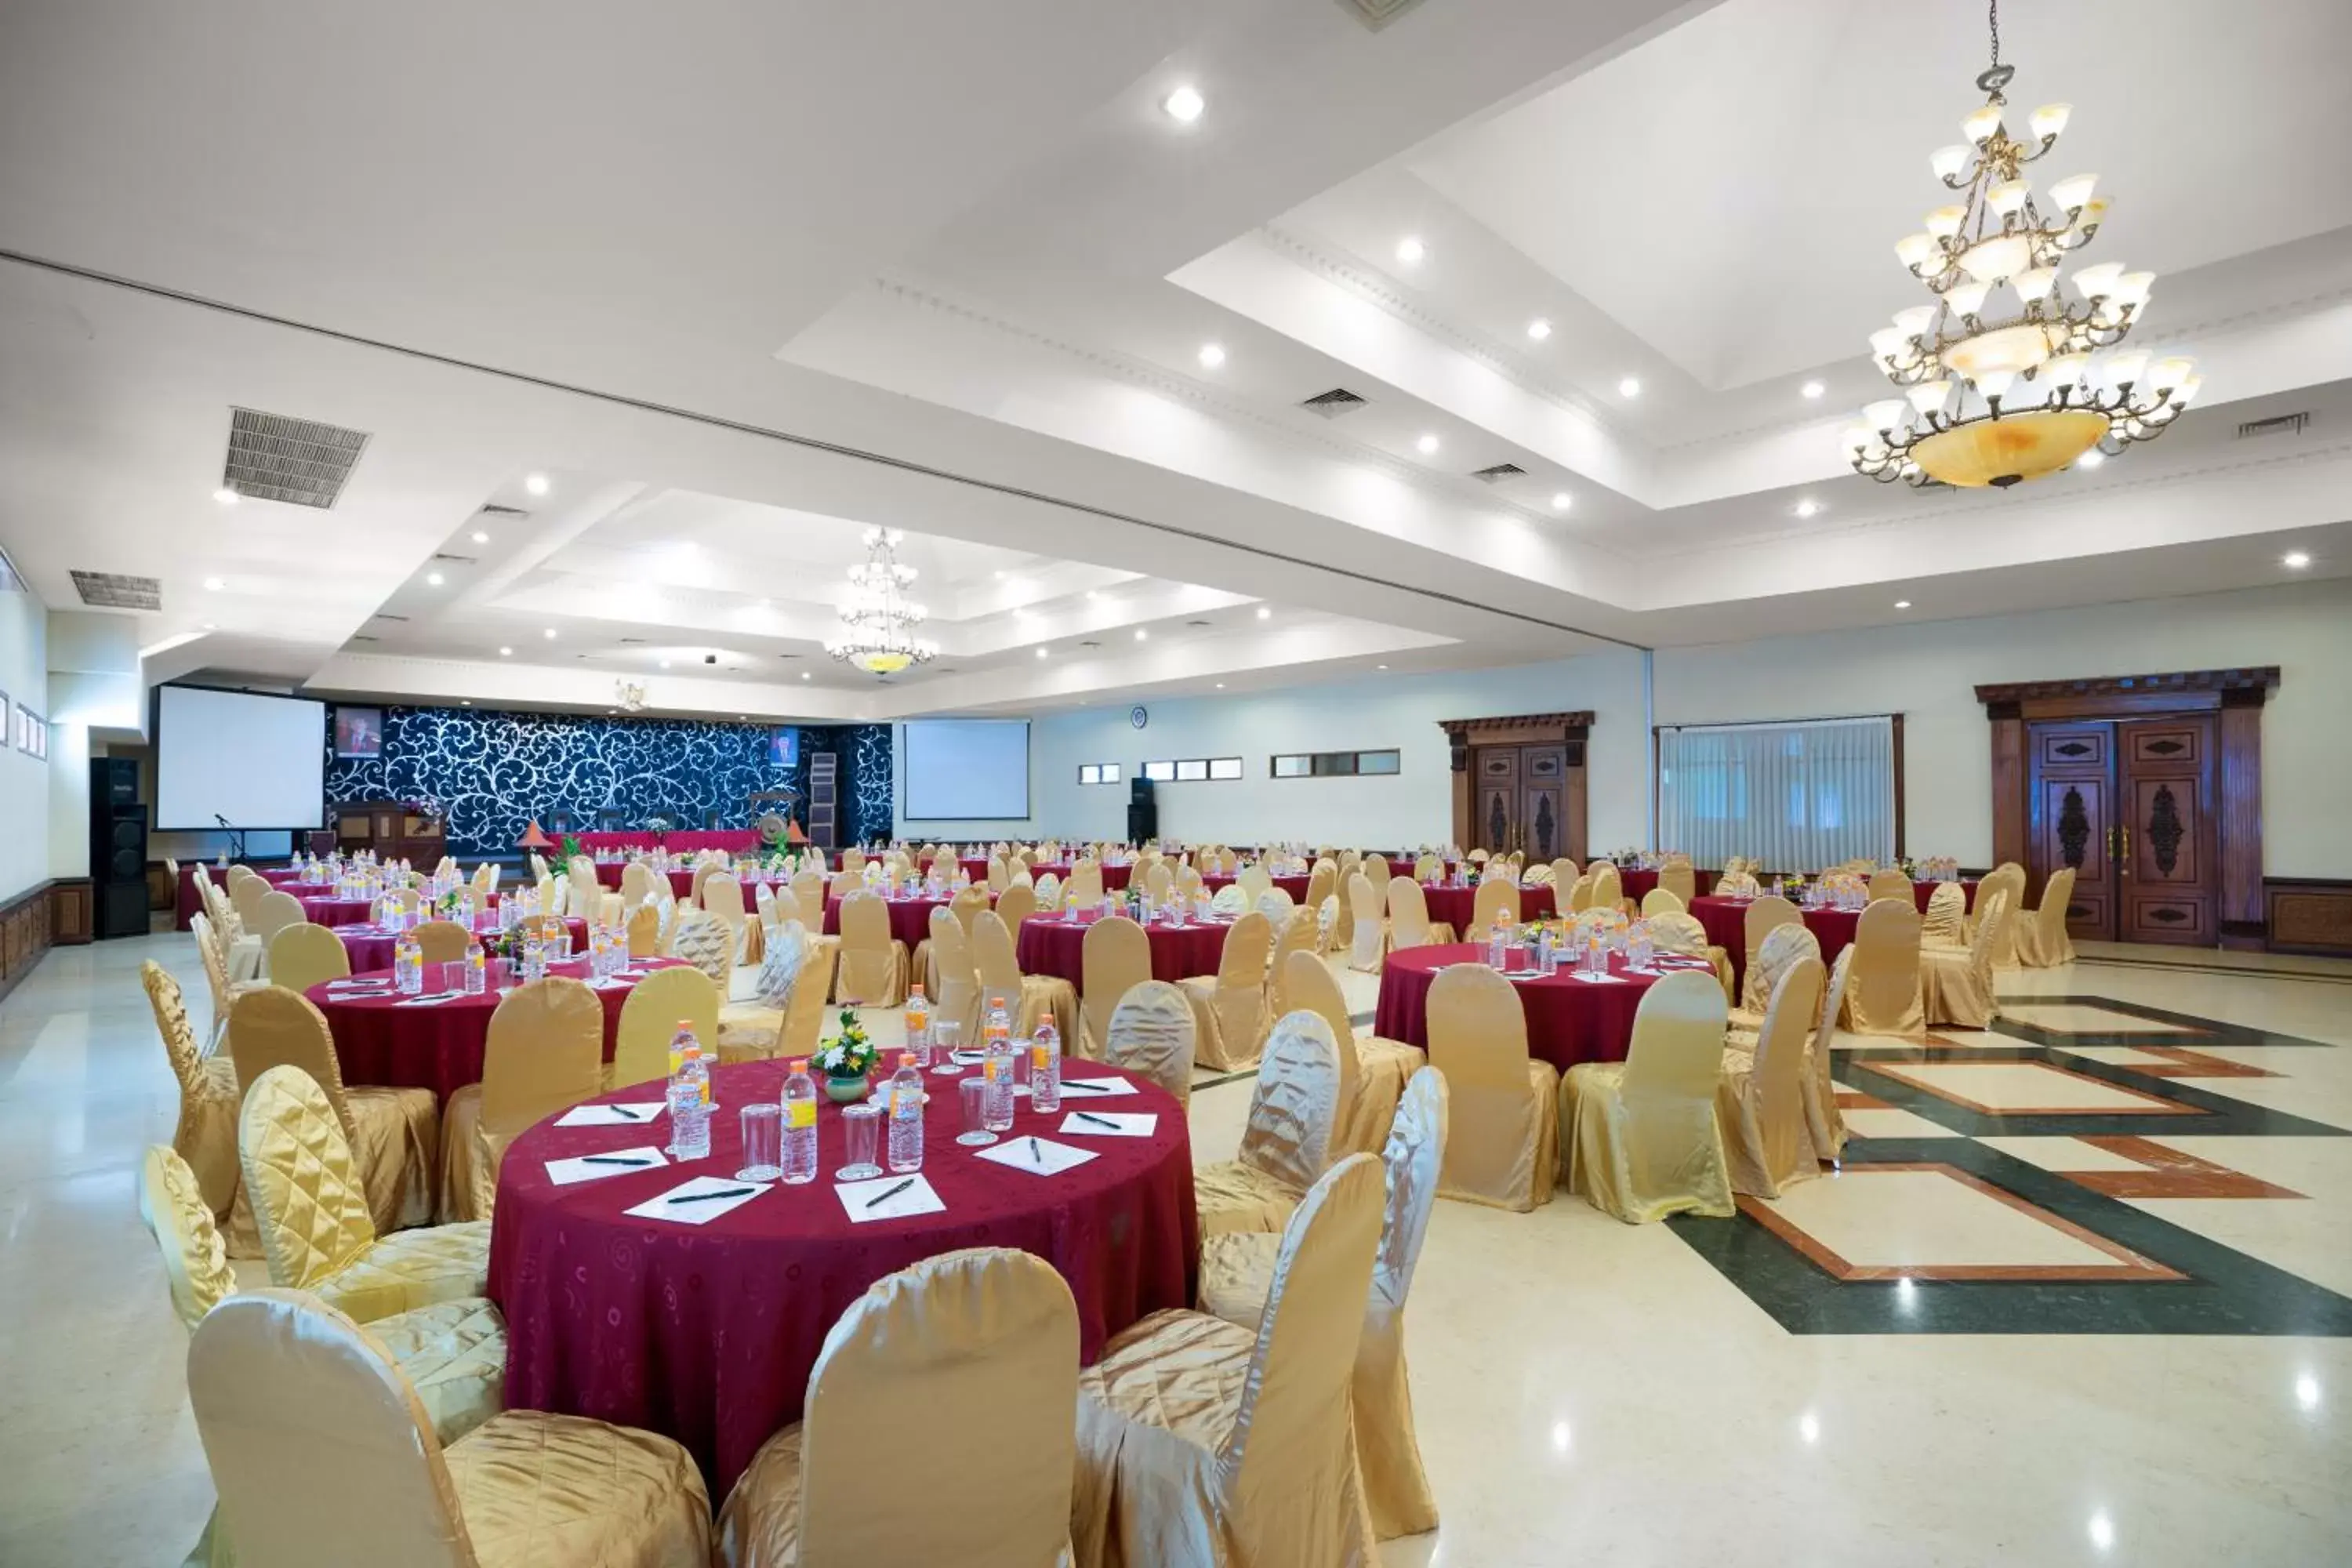 Banquet/Function facilities, Banquet Facilities in Royal Orchids Garden Hotel & Condominium